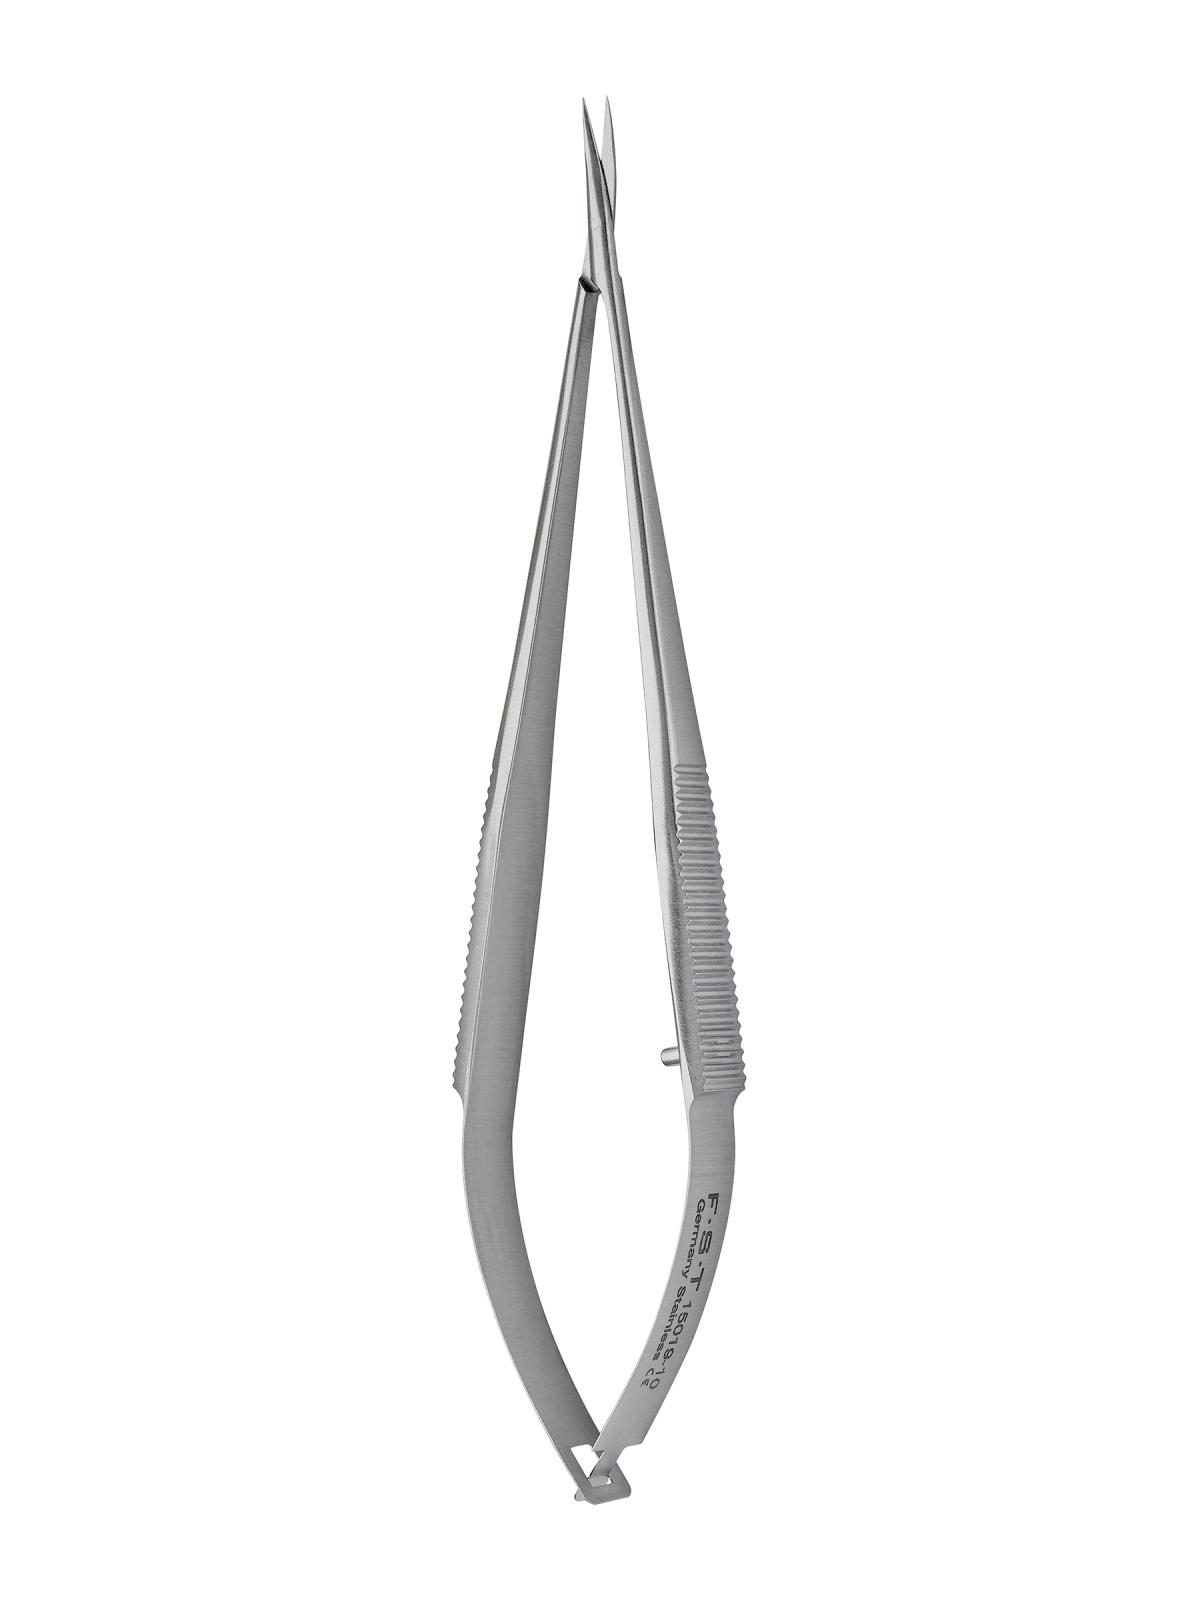 Fine Science Tools Vannas Spring Scissors - 2.5mm Cutting Edge, Quantity